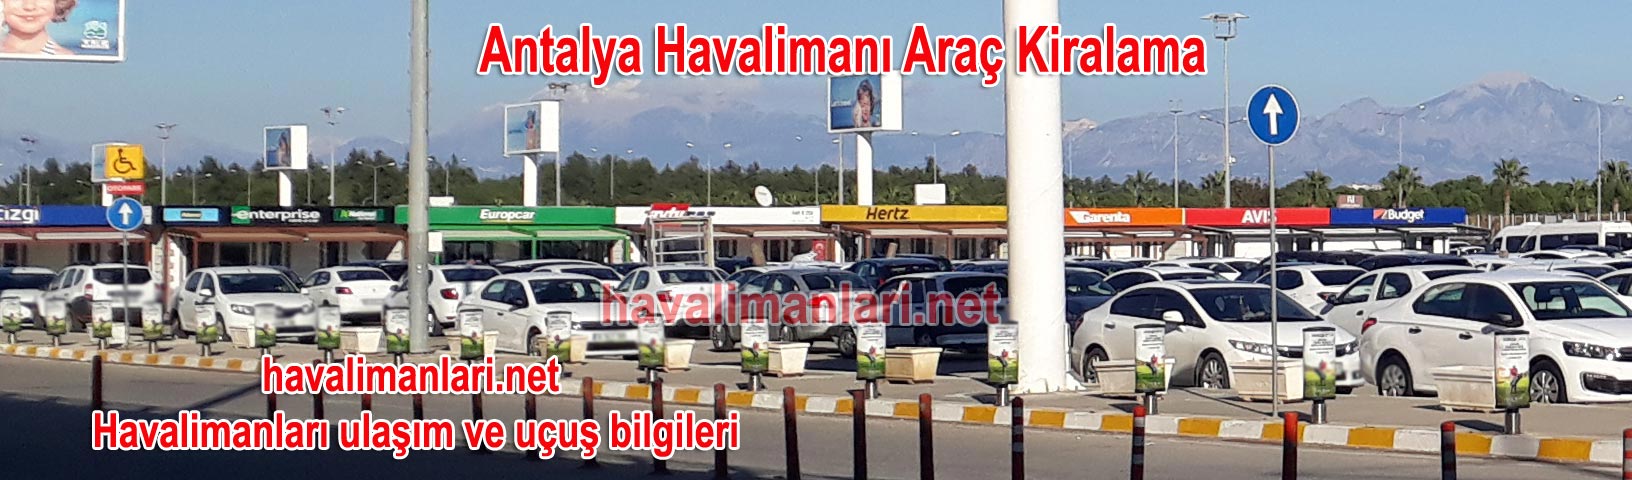 Antalya-Havalimanı-kiralık-araç-kiralama-rent-a-car